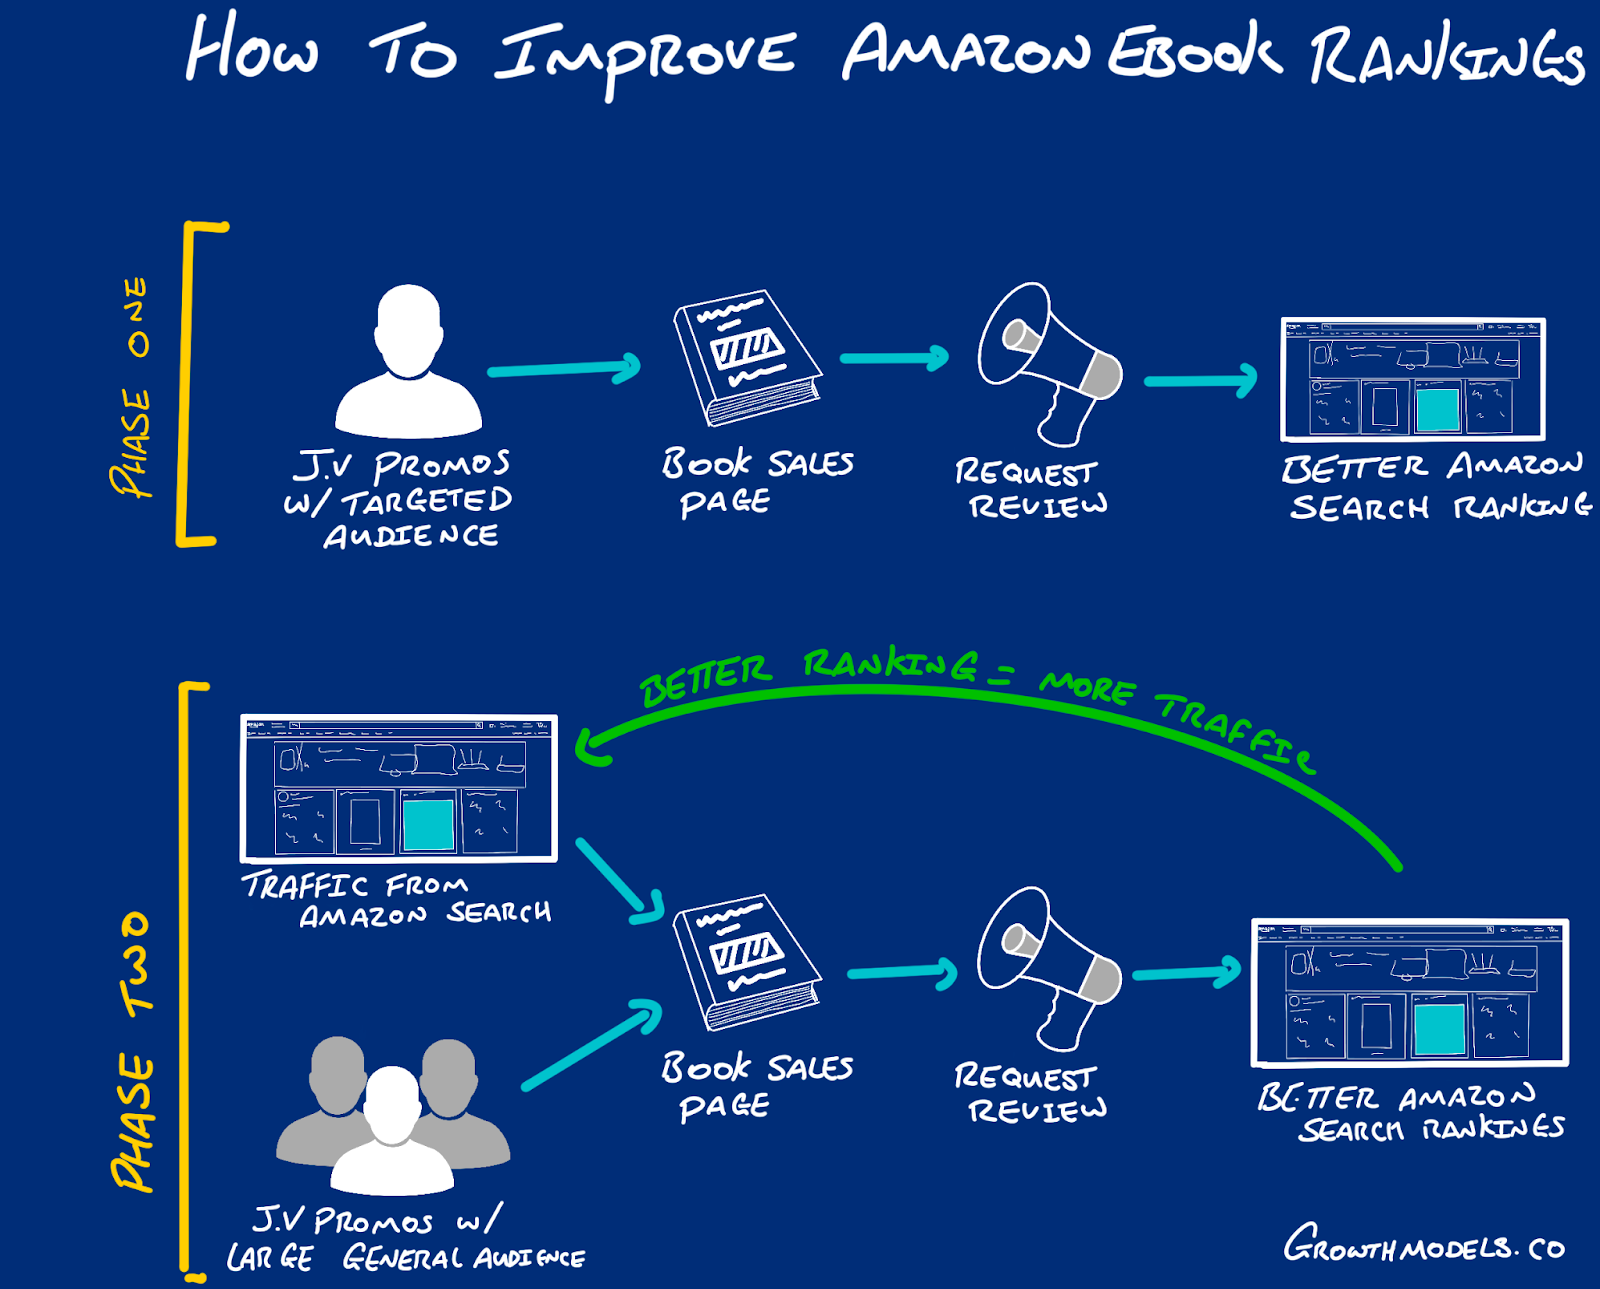 How to improve Amazon eBook rankings